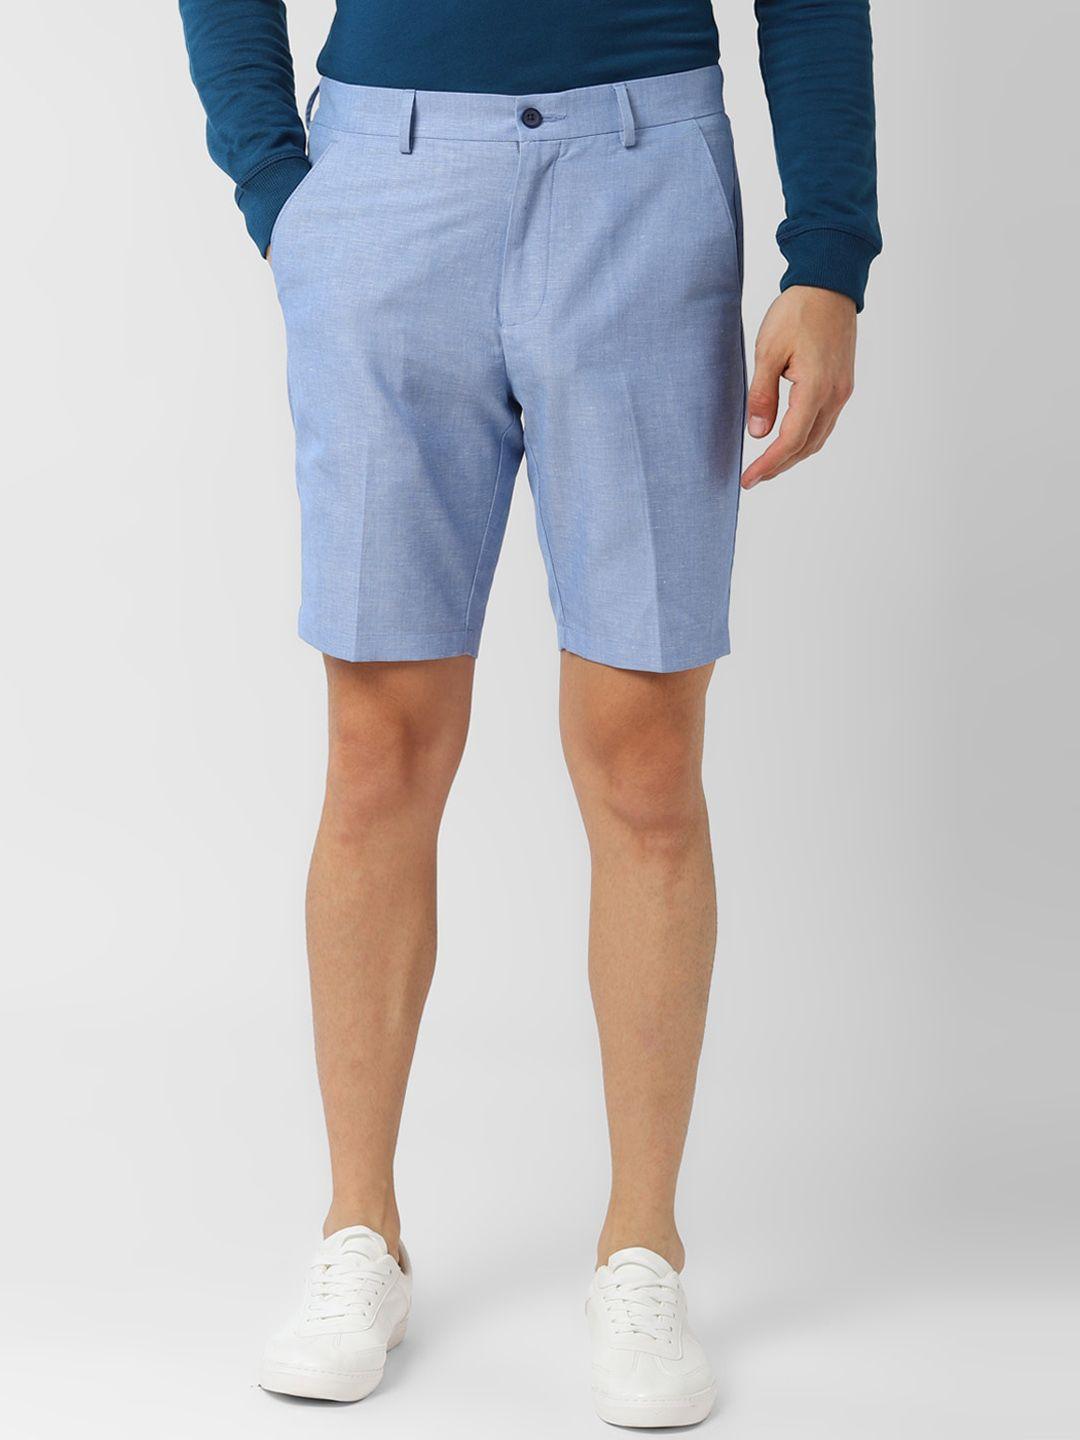 peter england men blue solid slim fit regular shorts